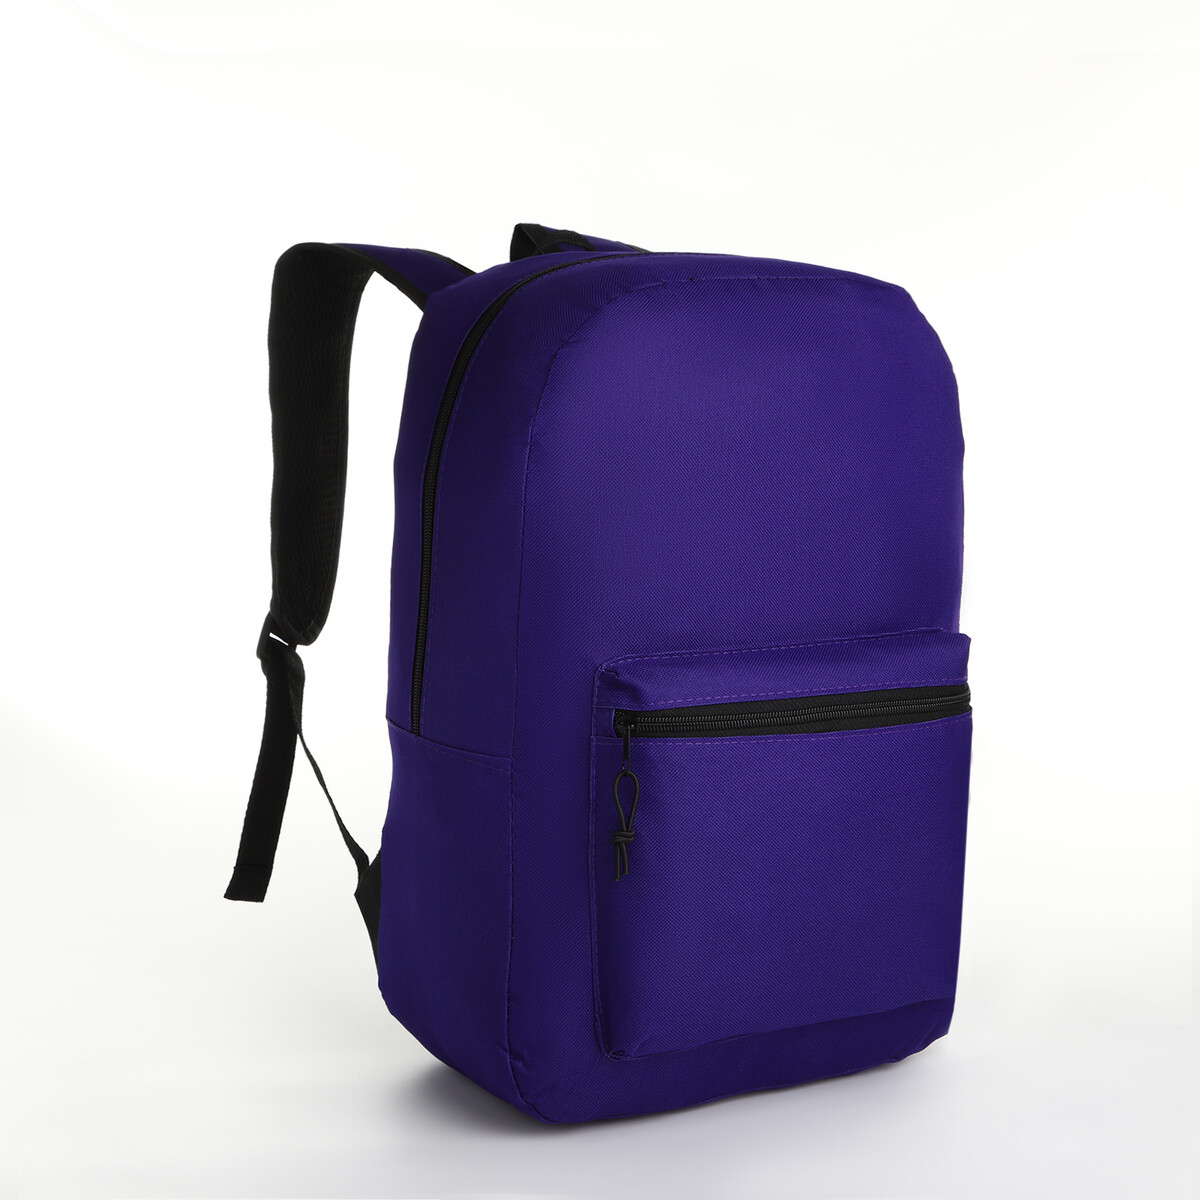 Рюкзак молодежный на молнии, наружный карман, цвет фиолетовый